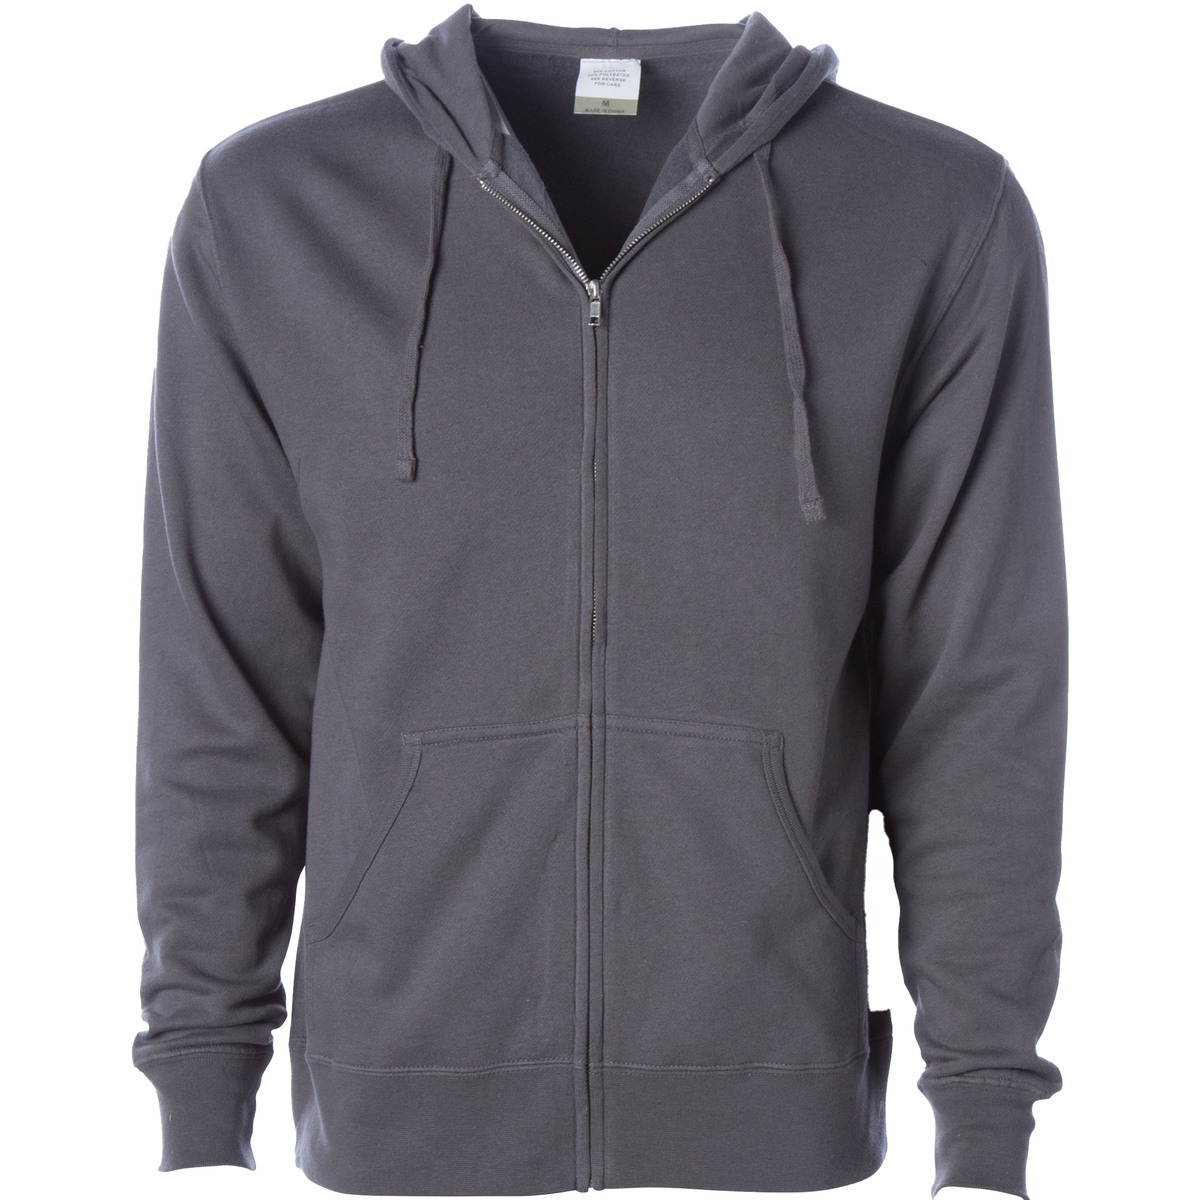 AFX4000Z - Lightweight Zip Hooded Sweatshirt